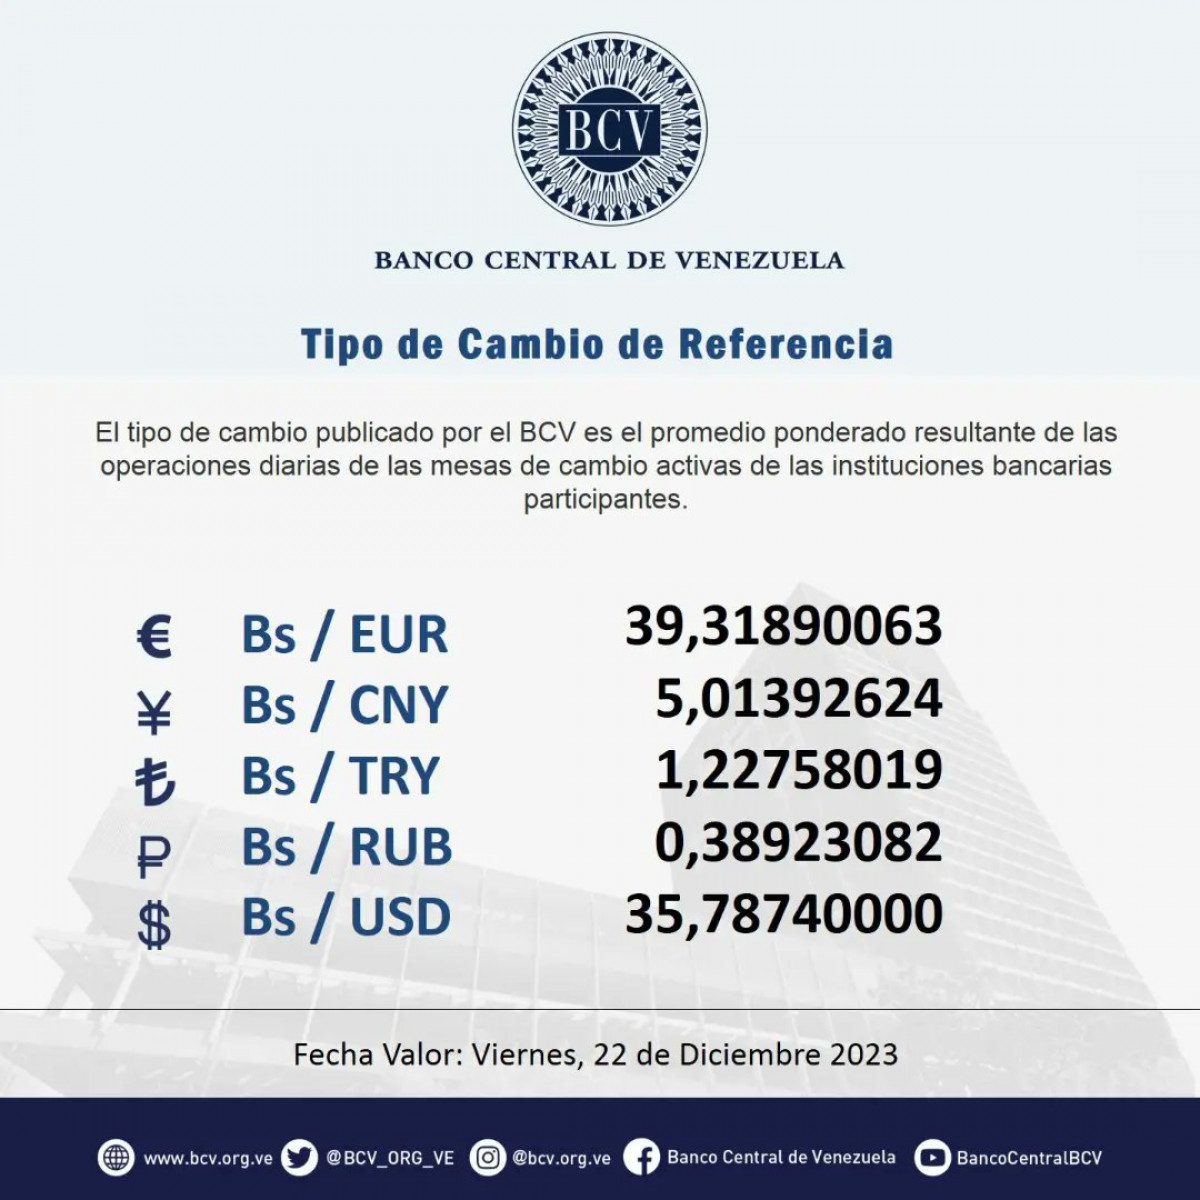 dolartoday en venezuela precio del dolar este viernes 21 de diciembre de 2023 laverdaddemonagas.com bcv1